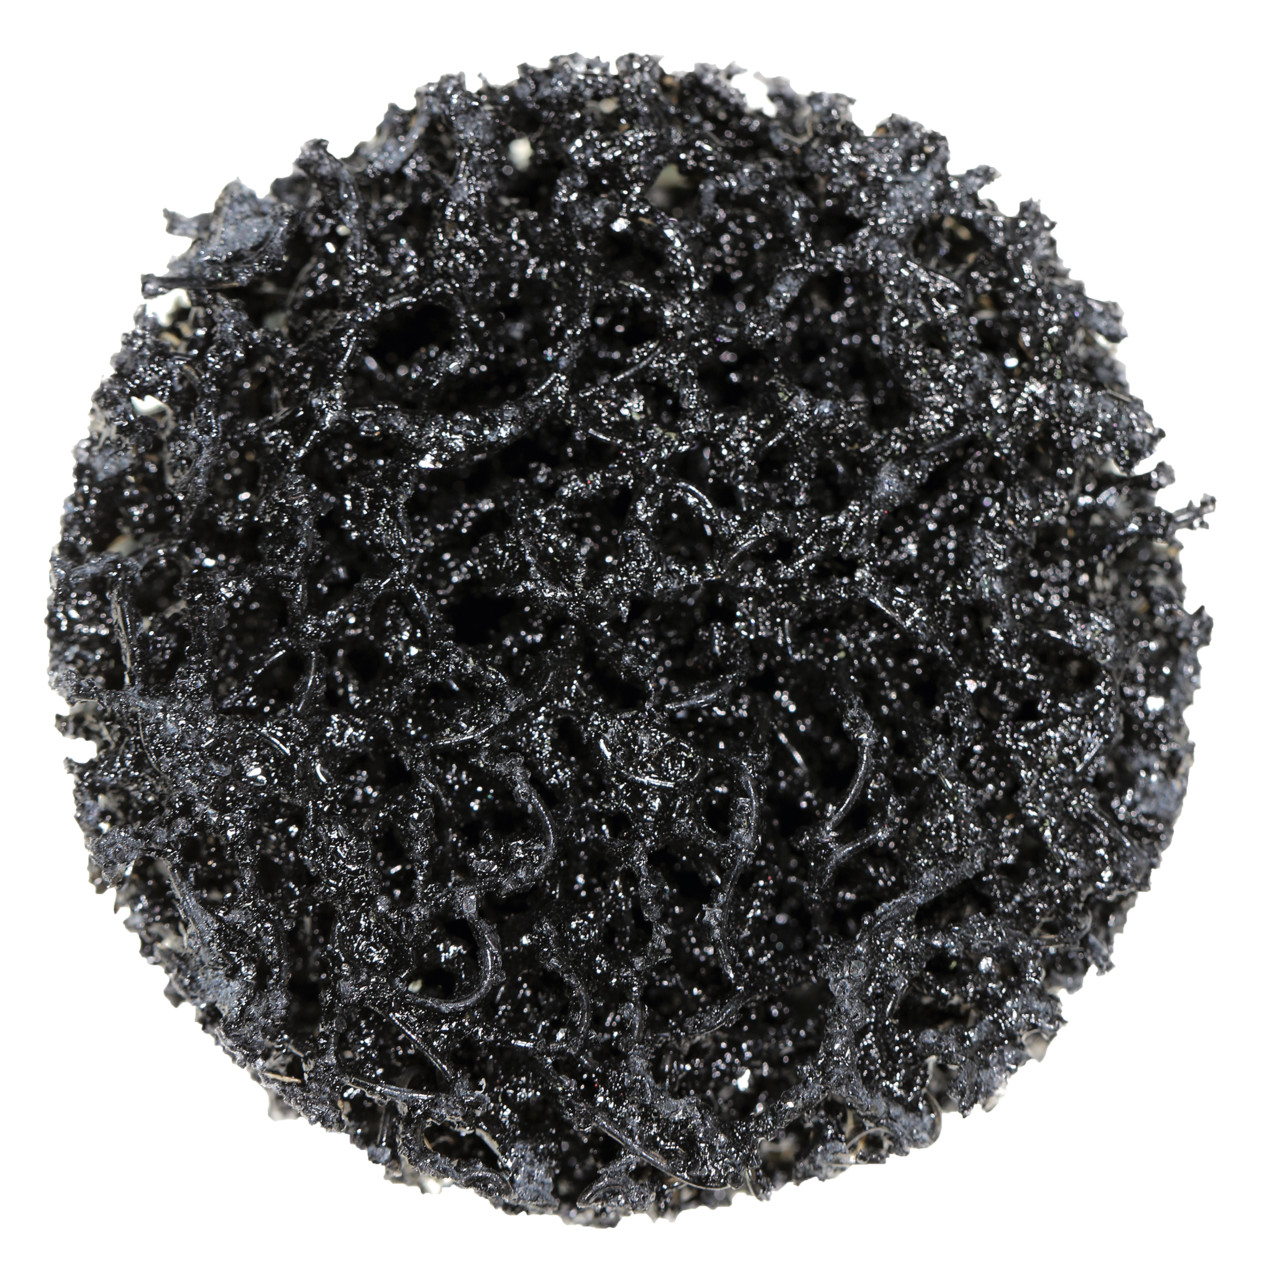 Tyrolit Disque de nettoyage grossier Dimension 75xR Pour l'acier, l'acier inoxydable et le PVC, A EX. GROB, forme : QDISC, art. 34206232